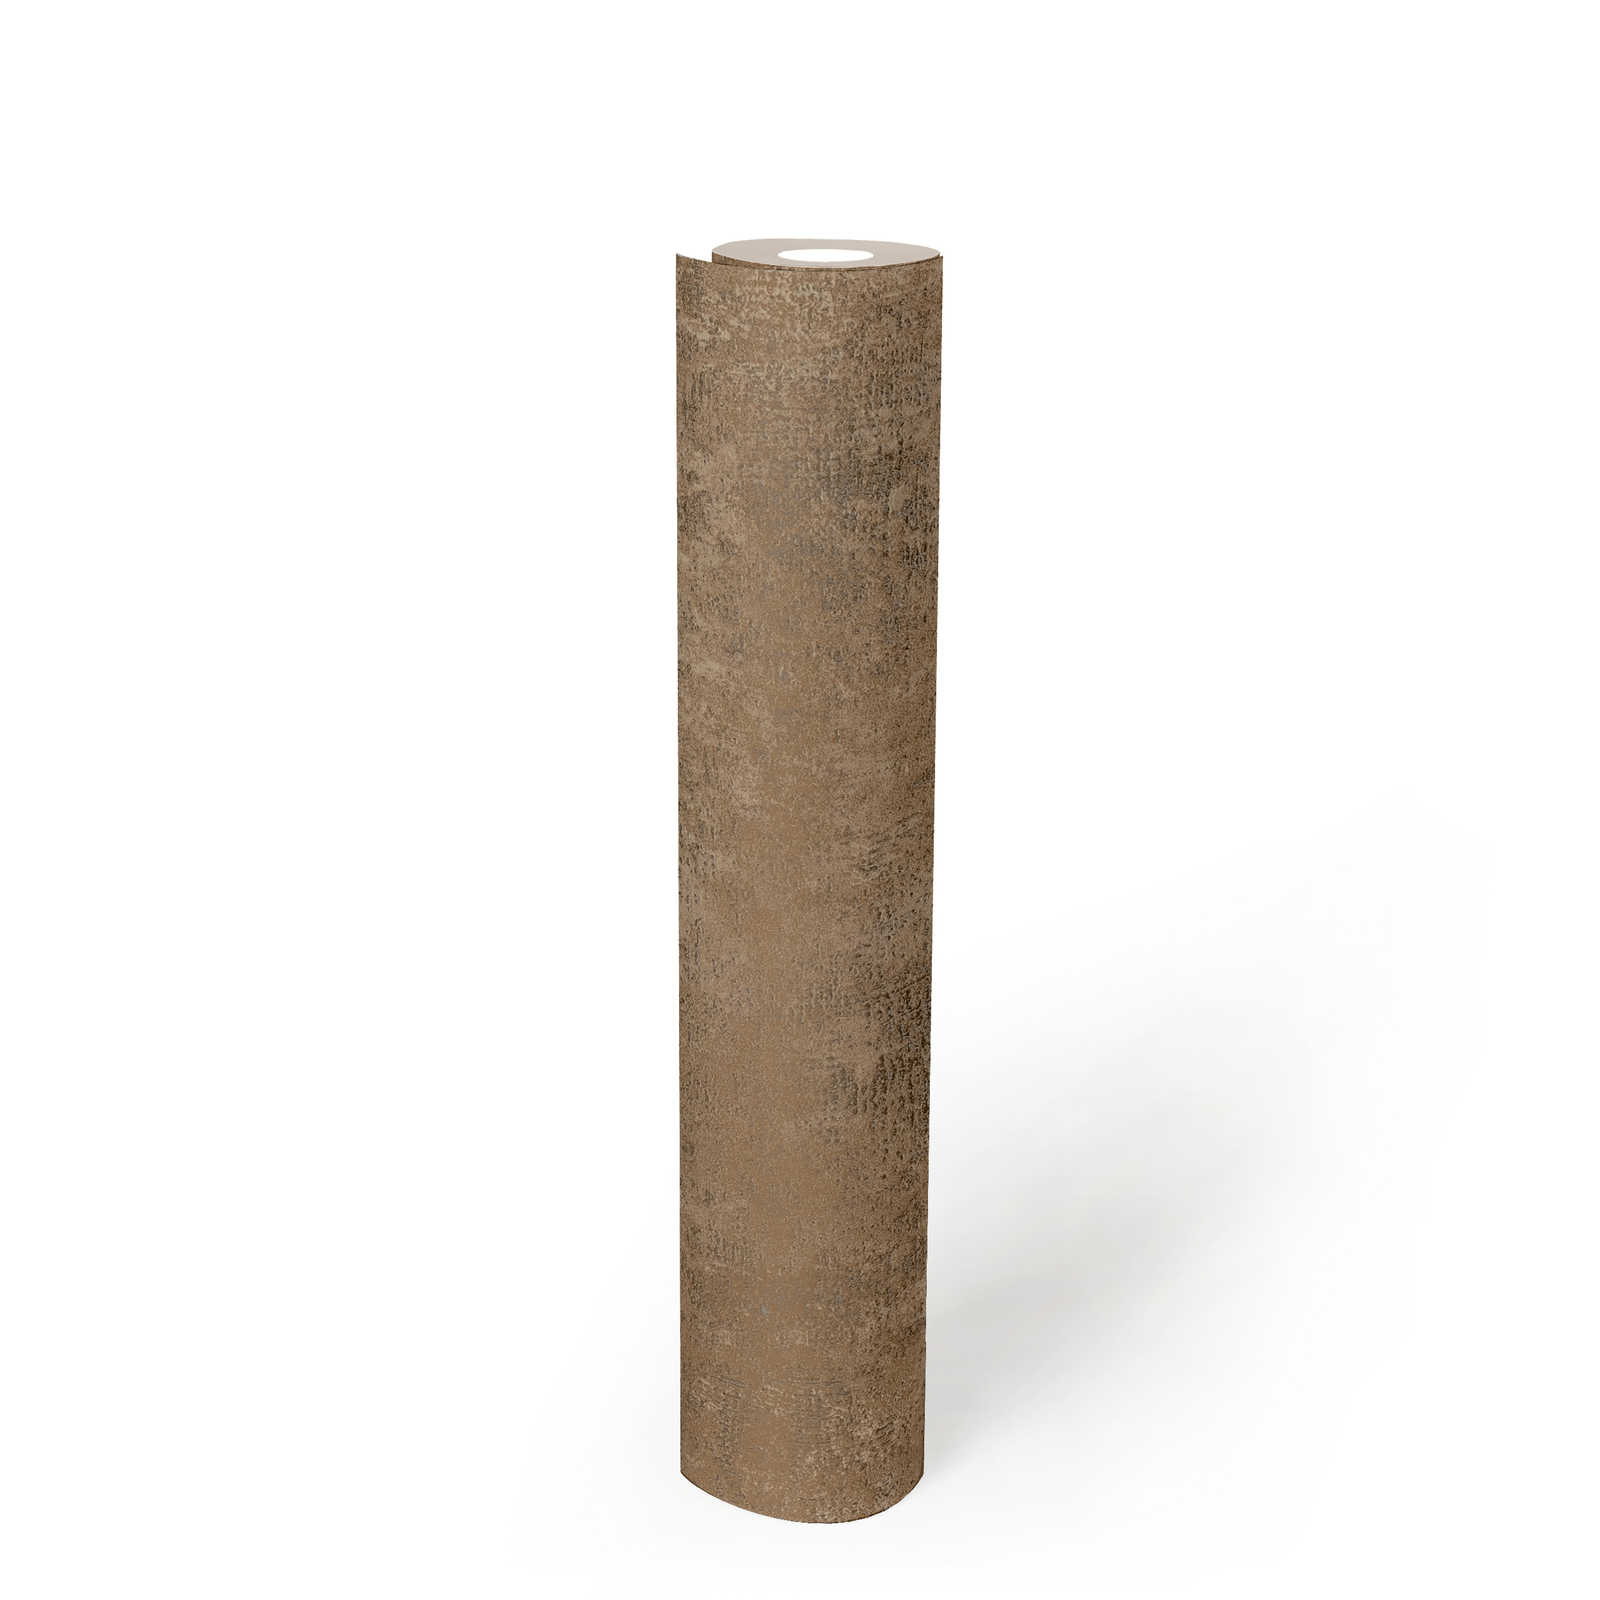             Papel pintado monocromo bronce con acento metálico - marrón
        